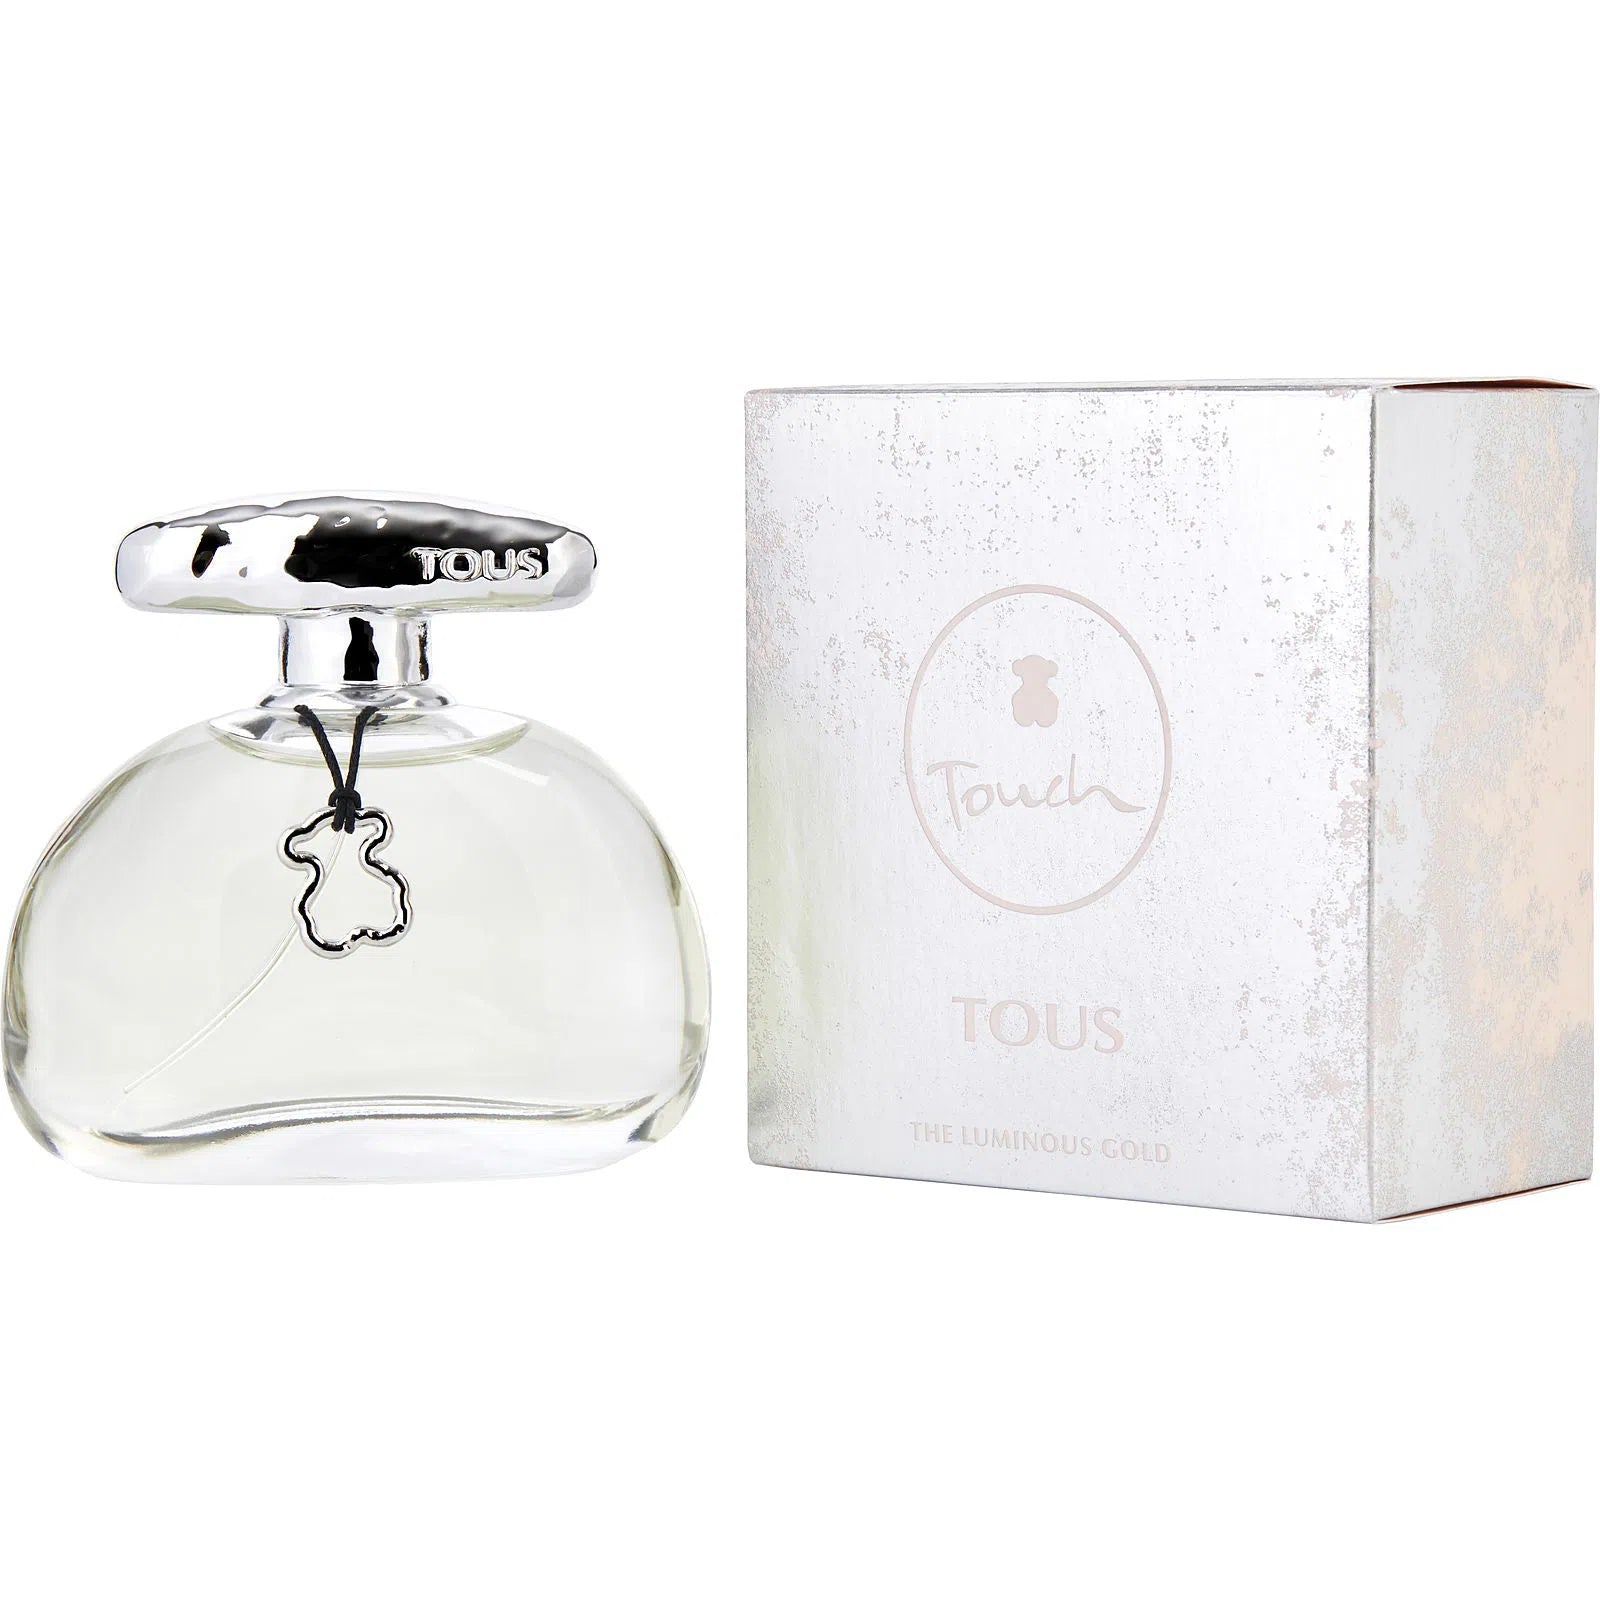 Perfume Tous Touch Luminous Gold EDT (W) / 100 ml - 8436550505870- Prive Perfumes Honduras